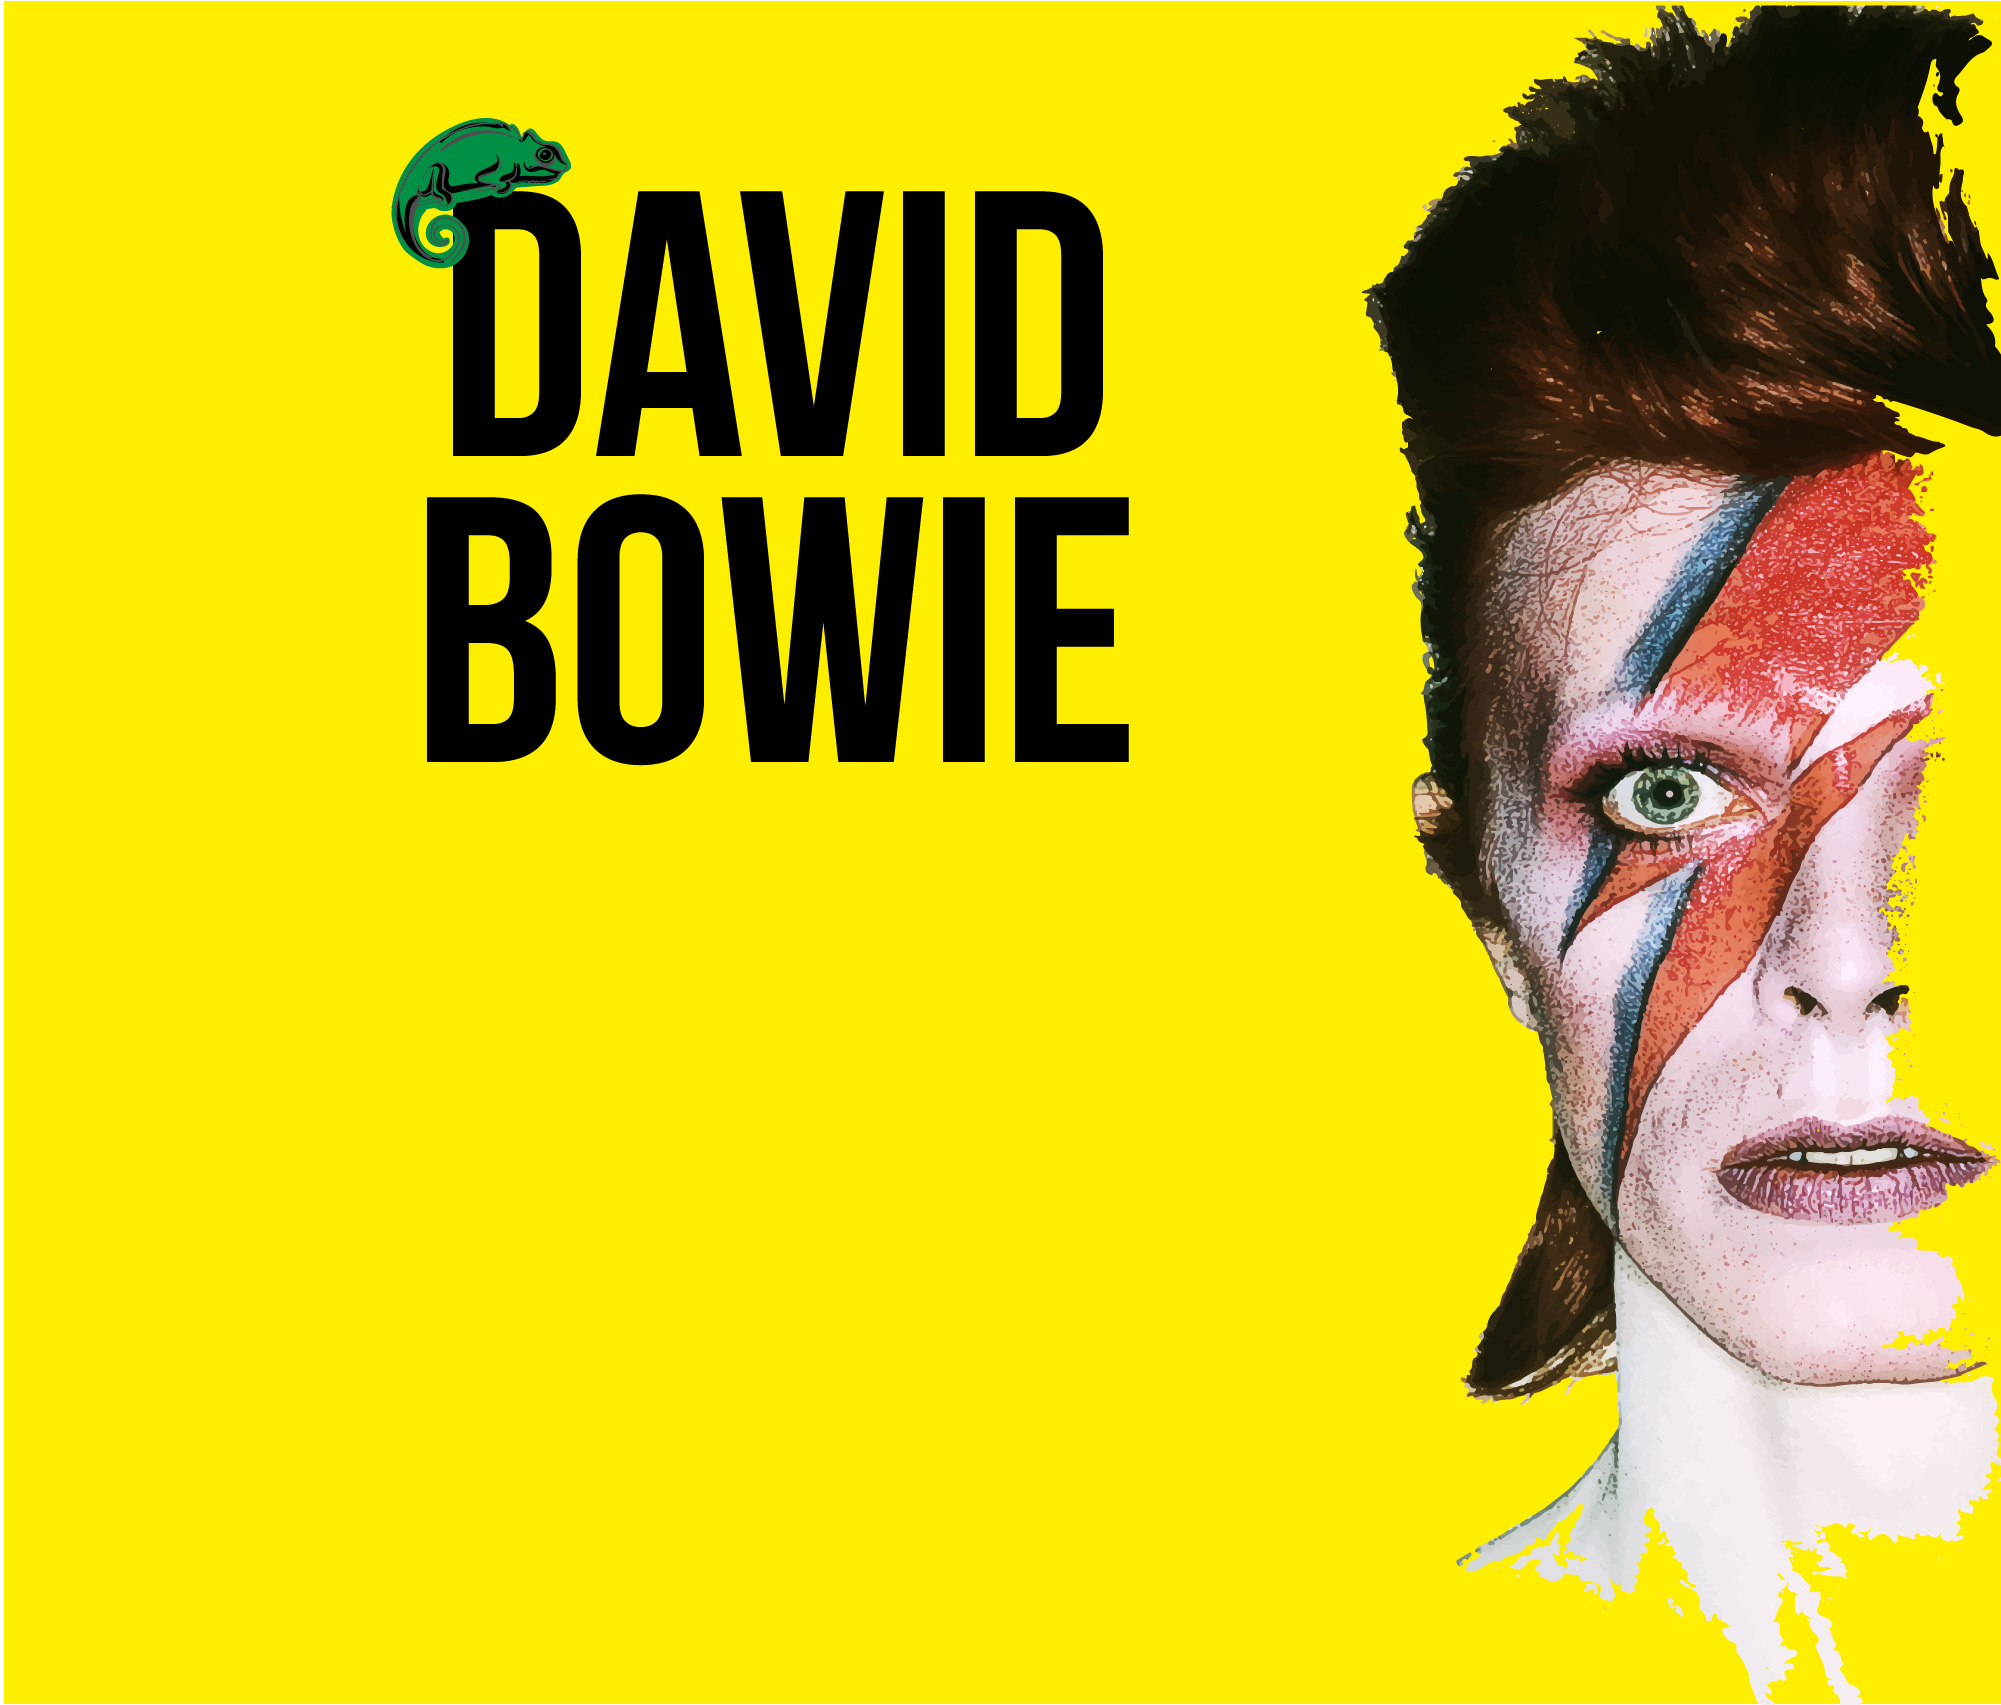 Exposición dedicada a David Bowie en Medellín ¡Últimos días! 